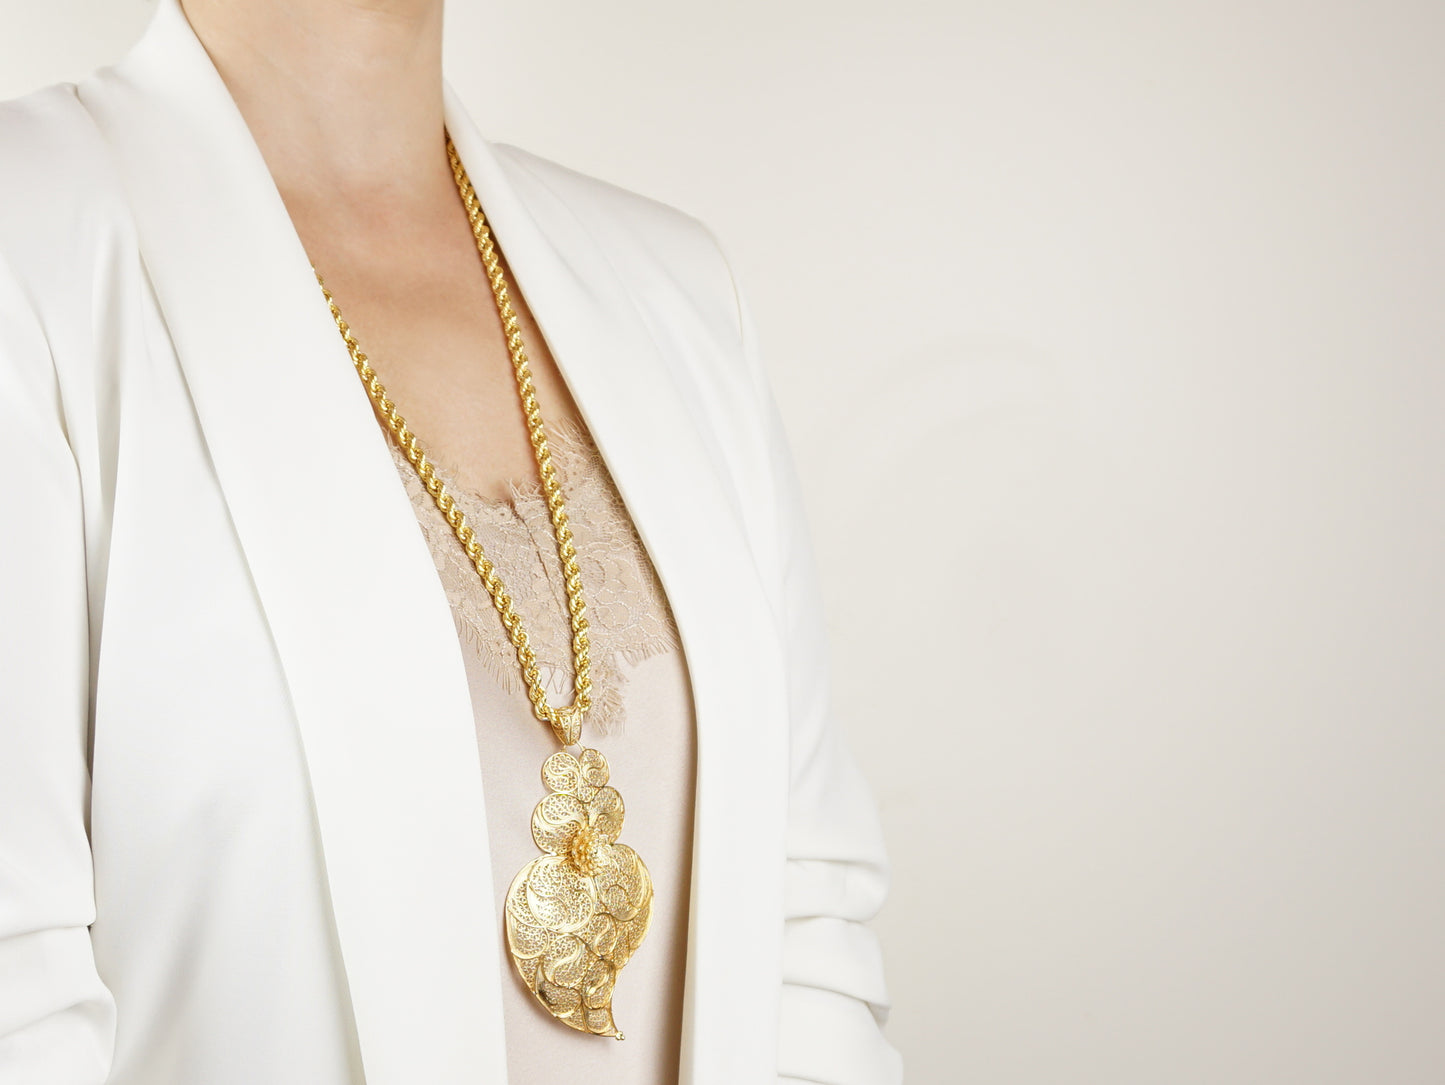 Colar Corda com Coração Minhoto Extra Grande, Filigrana Portuguesa, Prata de Lei 925 Dourada - Mulher a usar colar